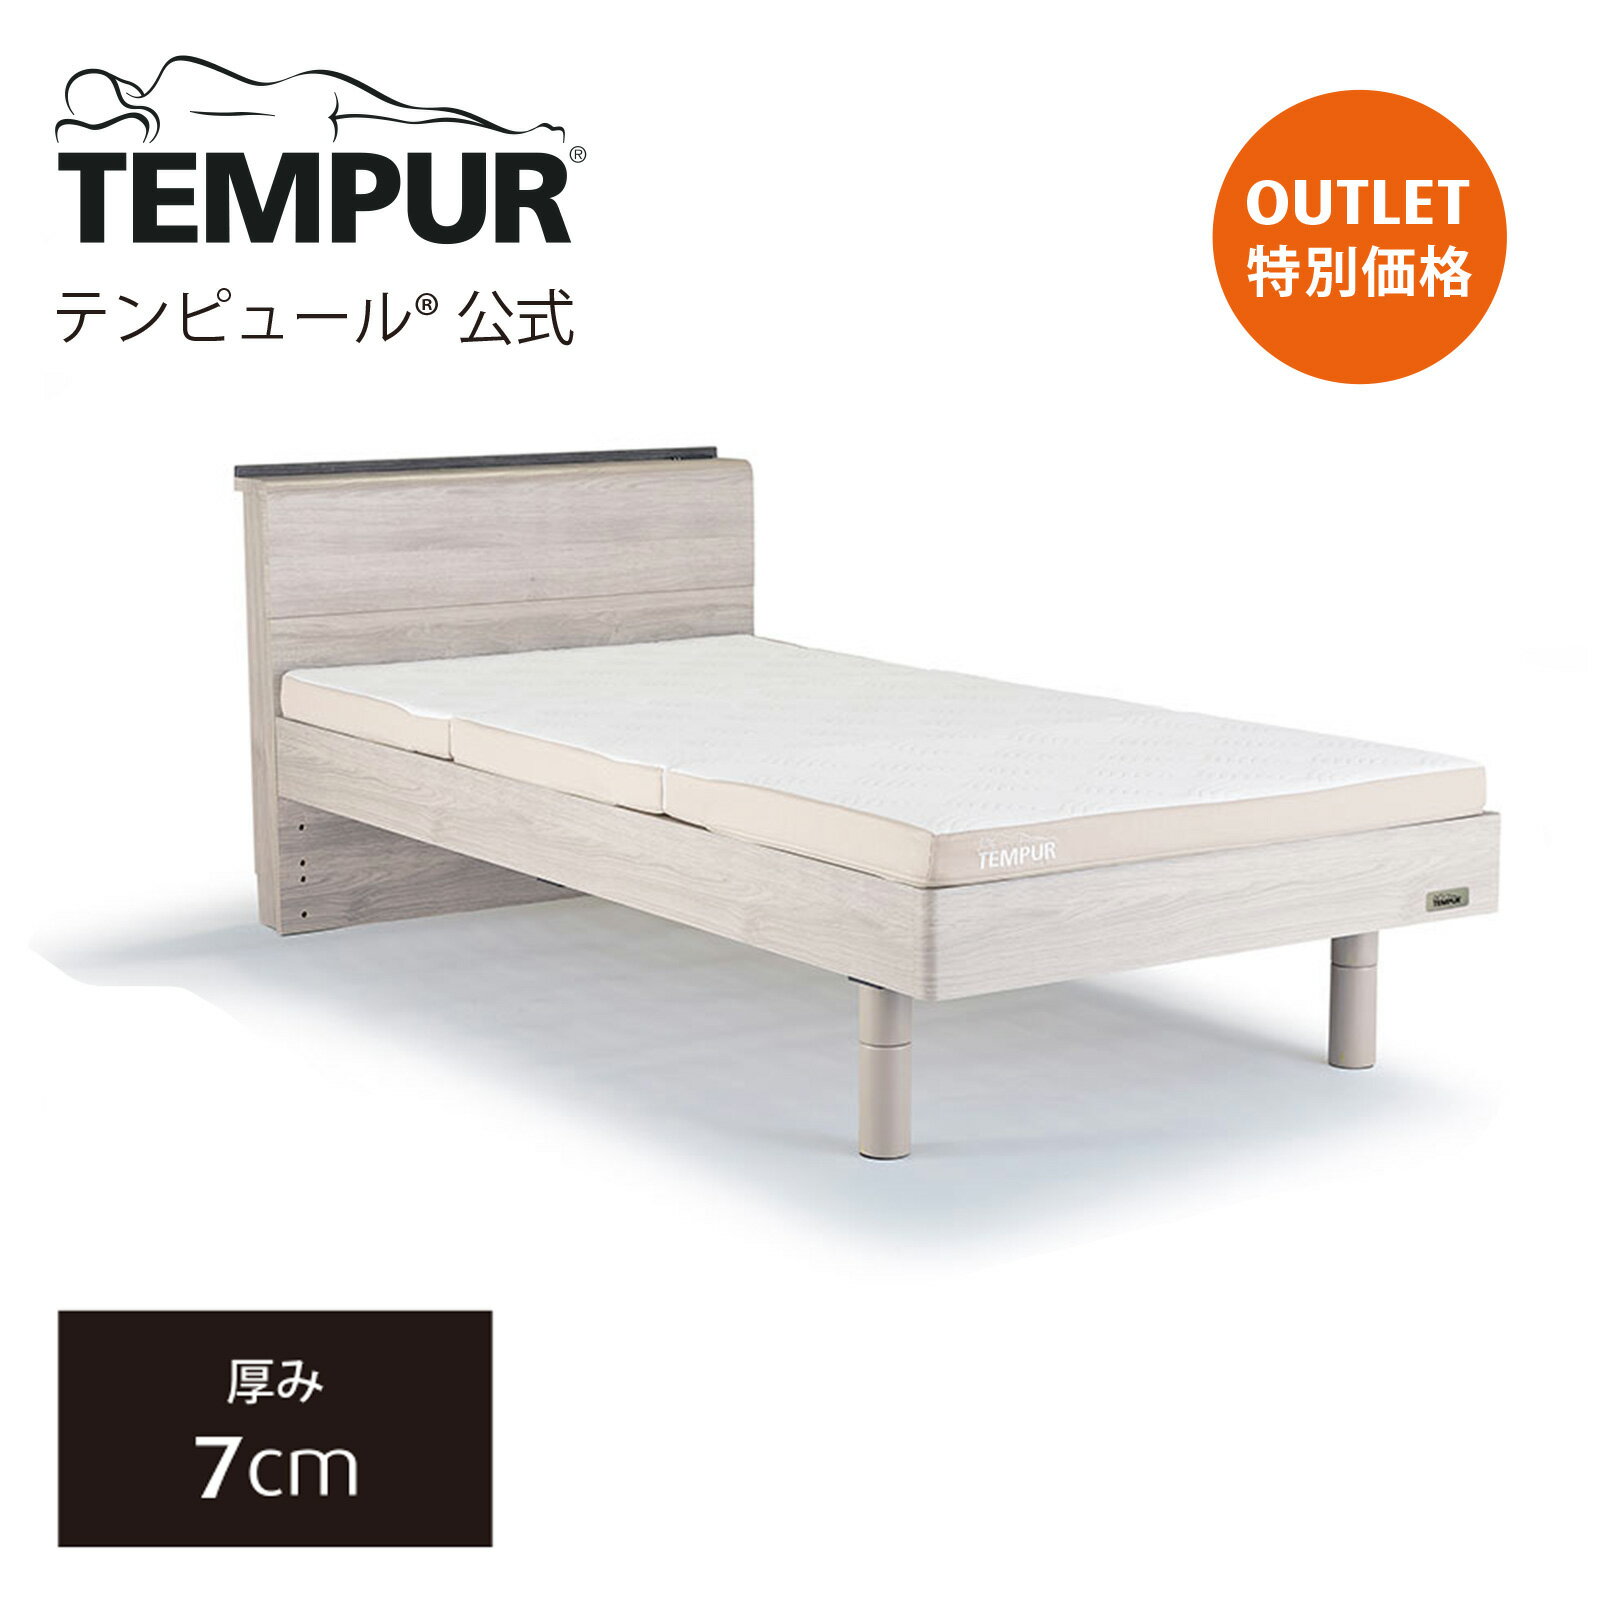 【アウトレット特別価格】テンピュール ベッド マットレス シングル セミダブル ダブル Tempur 木製ベッドと薄型マットレスのセット | すのこベッド | ワン フトン 厚み7cm 日本正規品 保証なし